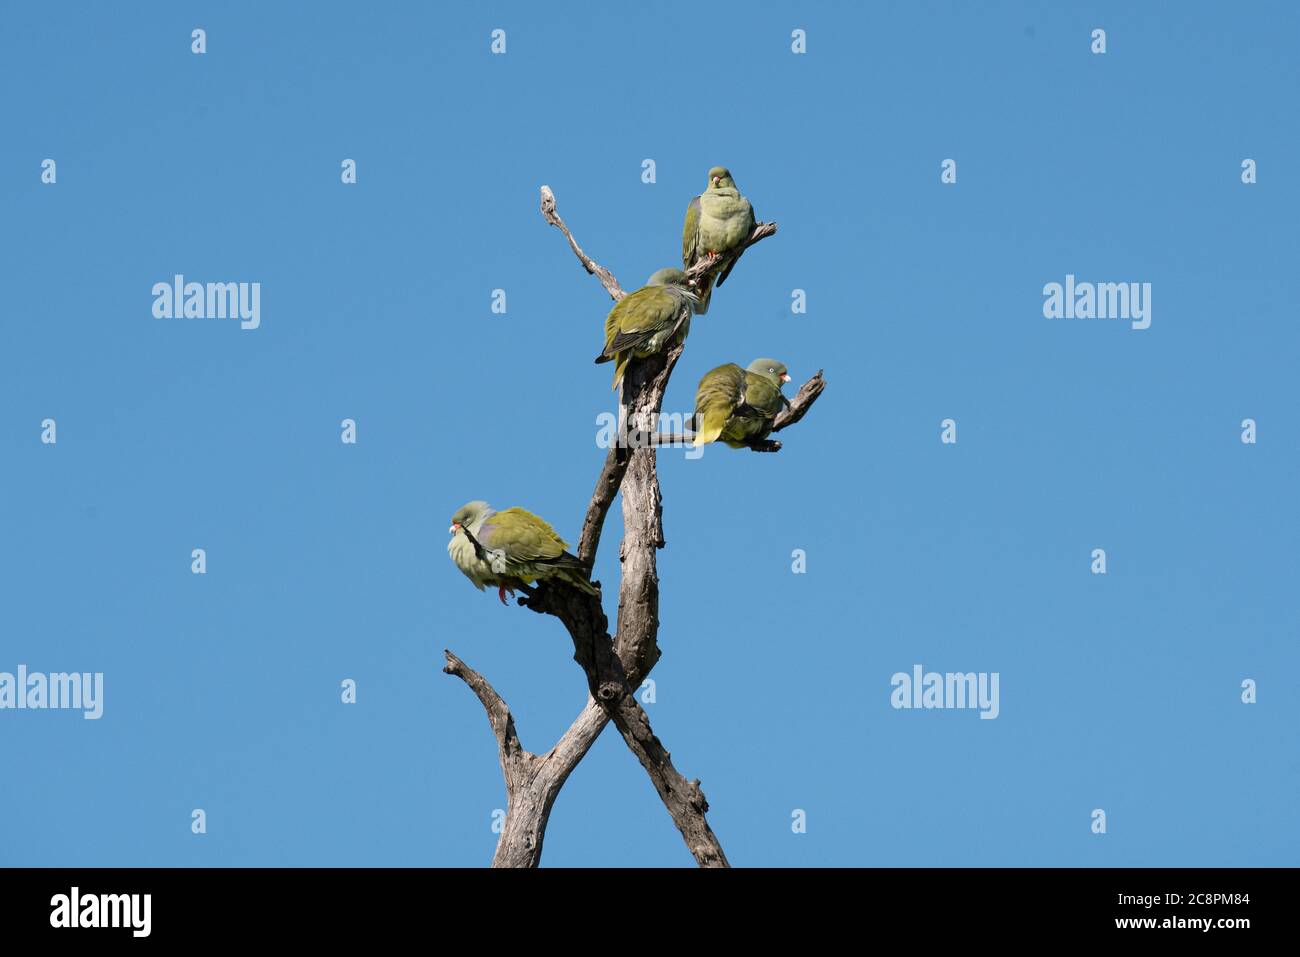 Eine Herde grüner Tauben, Treron calvus, die in einem toten Baum gegen den blauen Himmel barst. Stockfoto